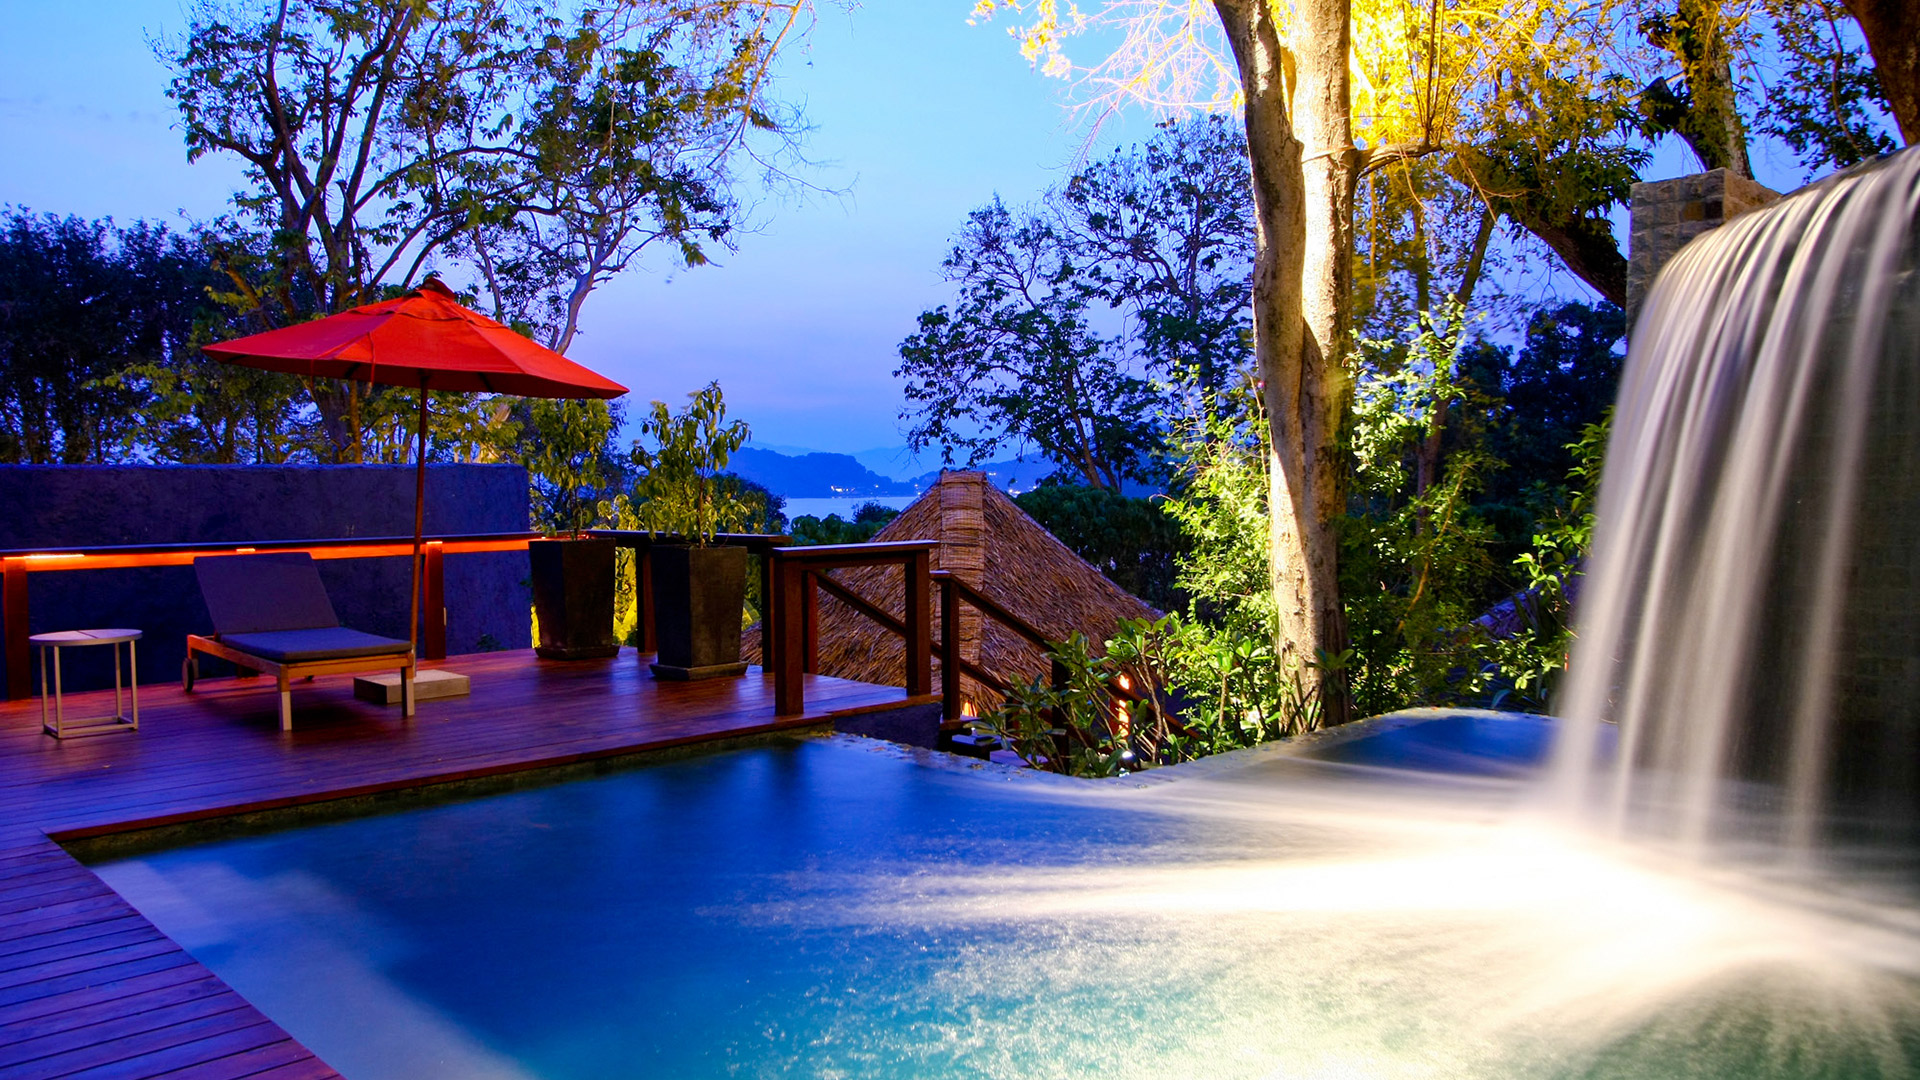 phuket spa resort luxury pool villa area seaview